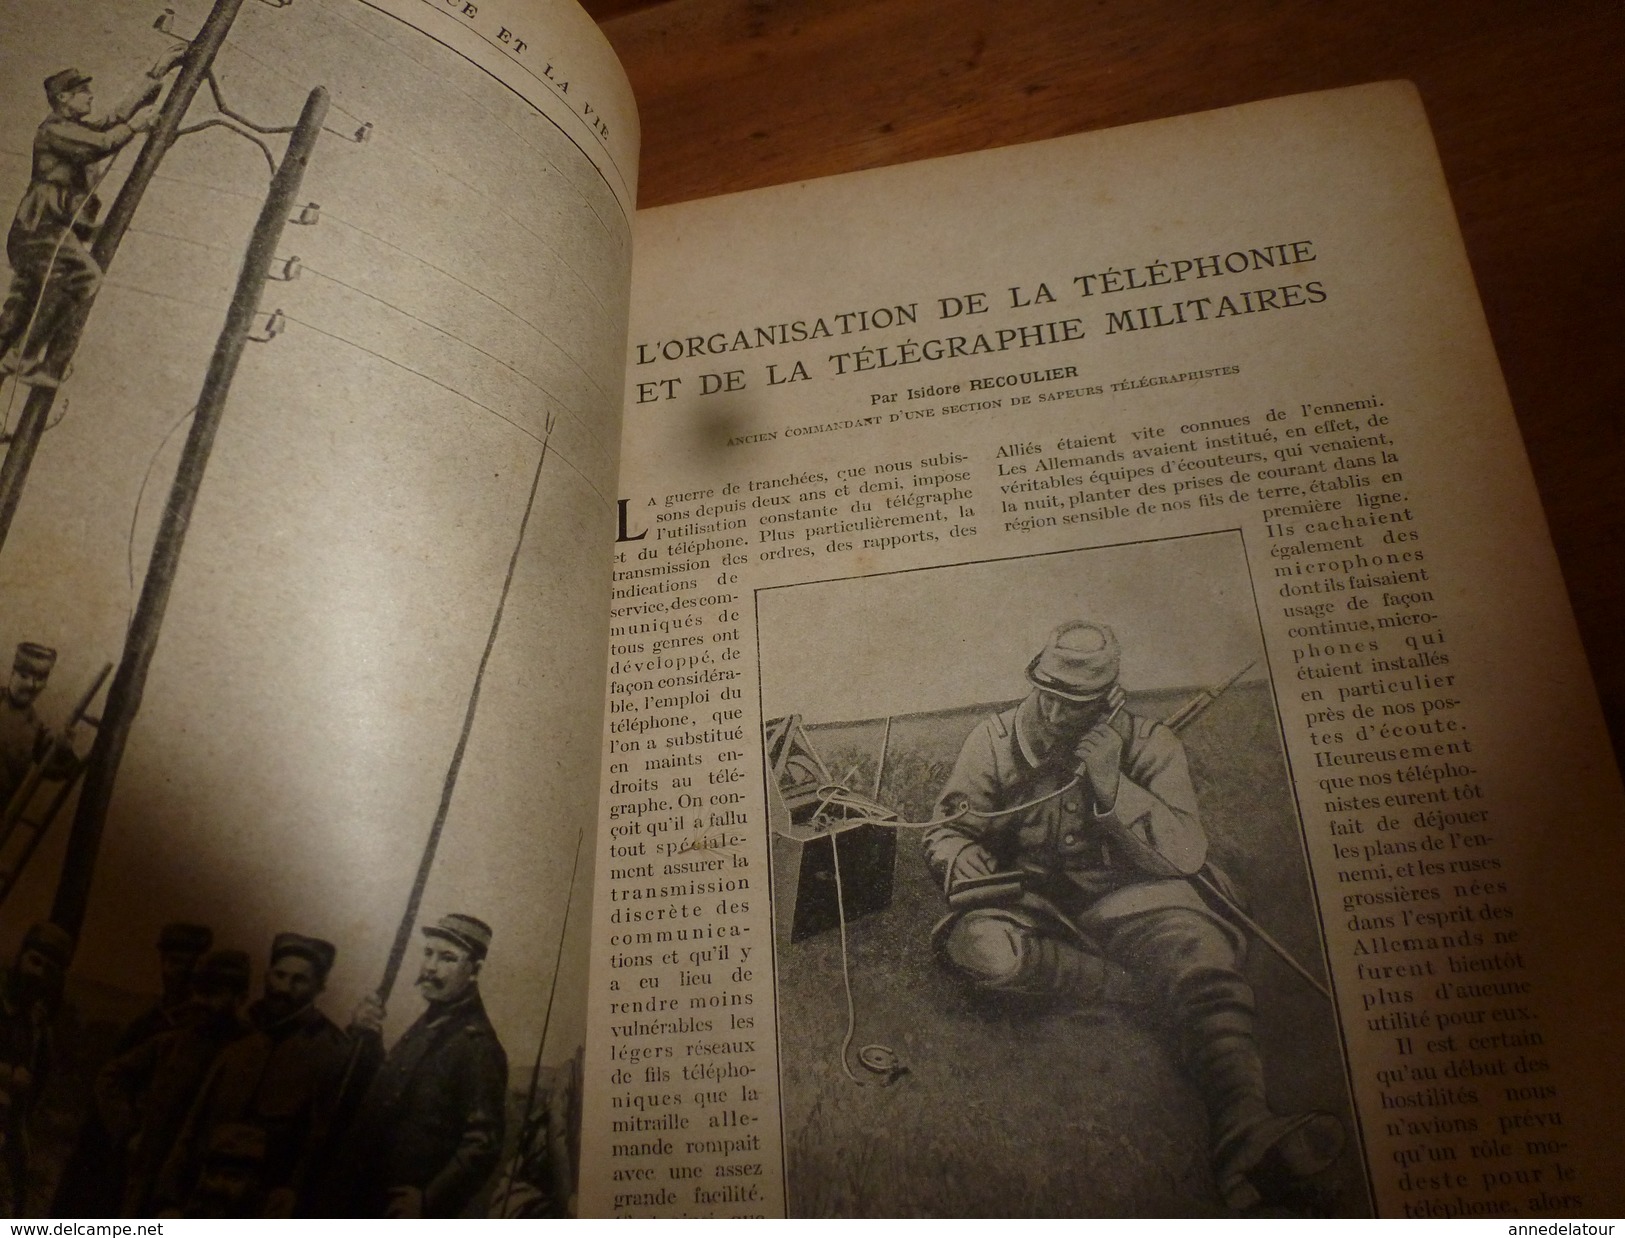 1917 LSELV :Fourgons-viviers Pour Transport Du Poisson(de Frédéric Chaumenton);Téléphonie Militaire(Isidor Recoulier) - Telefonía